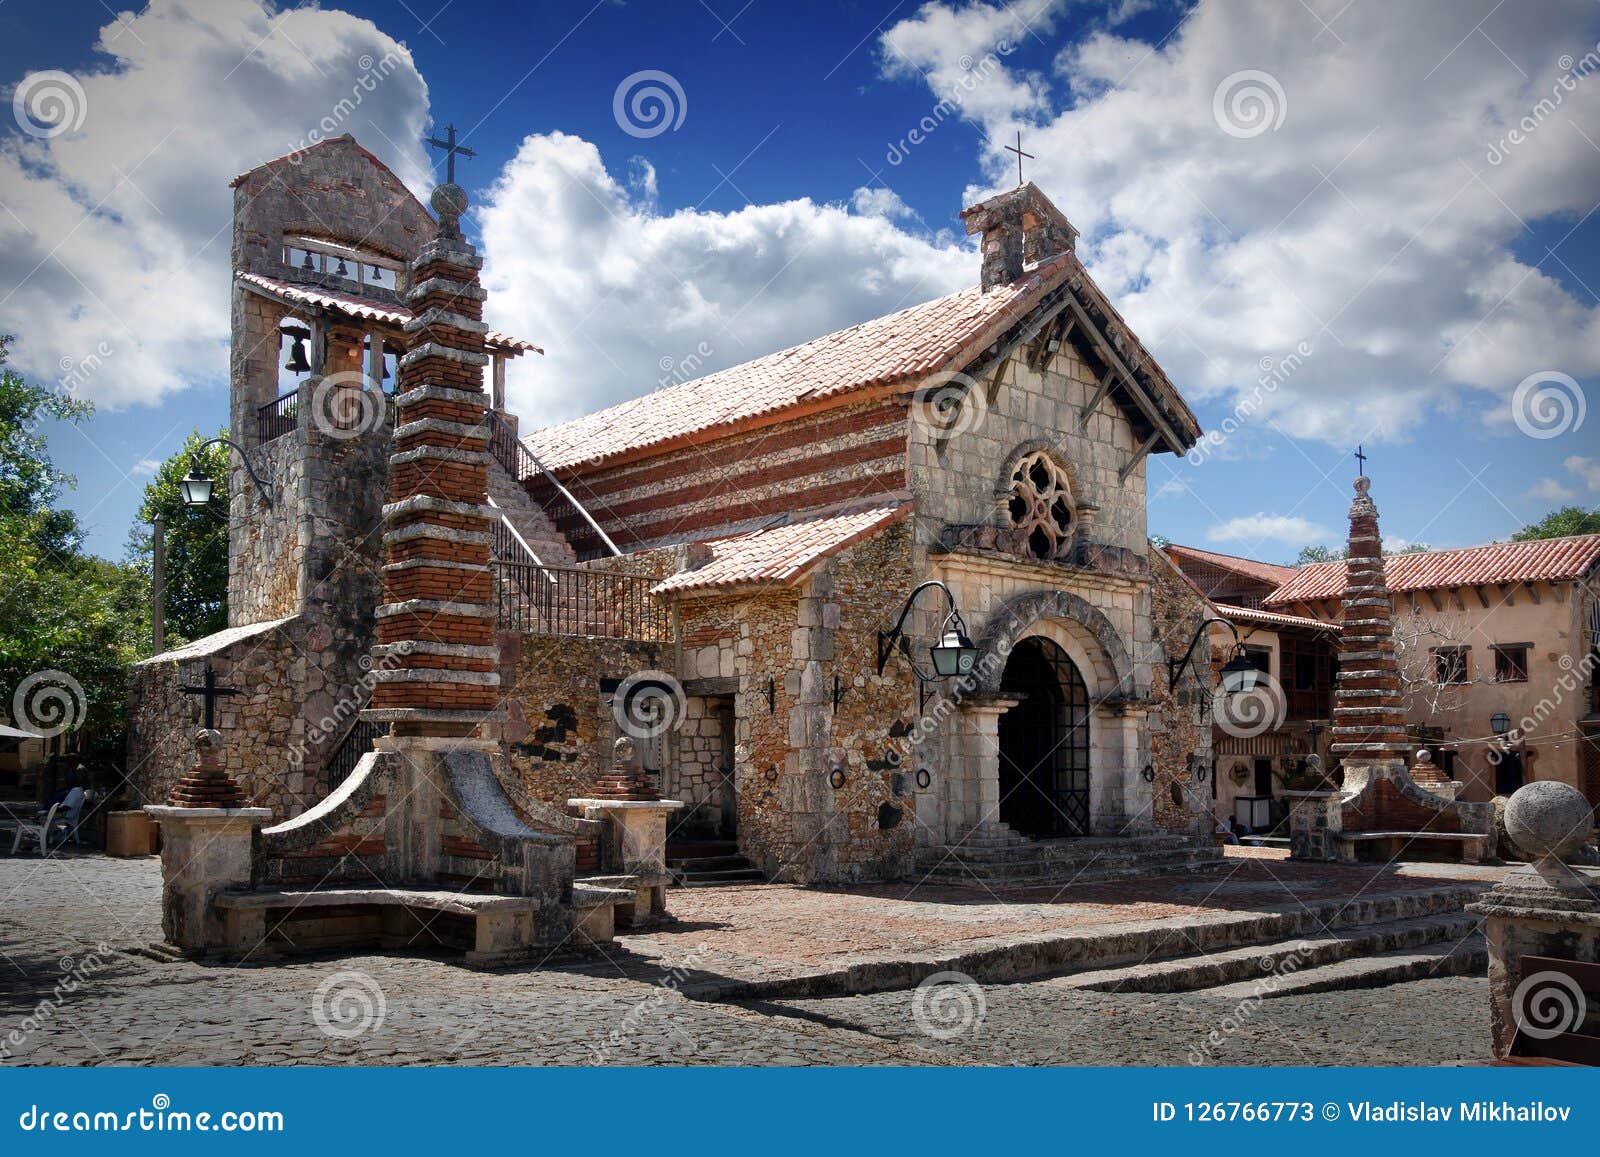 st. stanislaus church in altos de chavon, casa de campo, dominicana